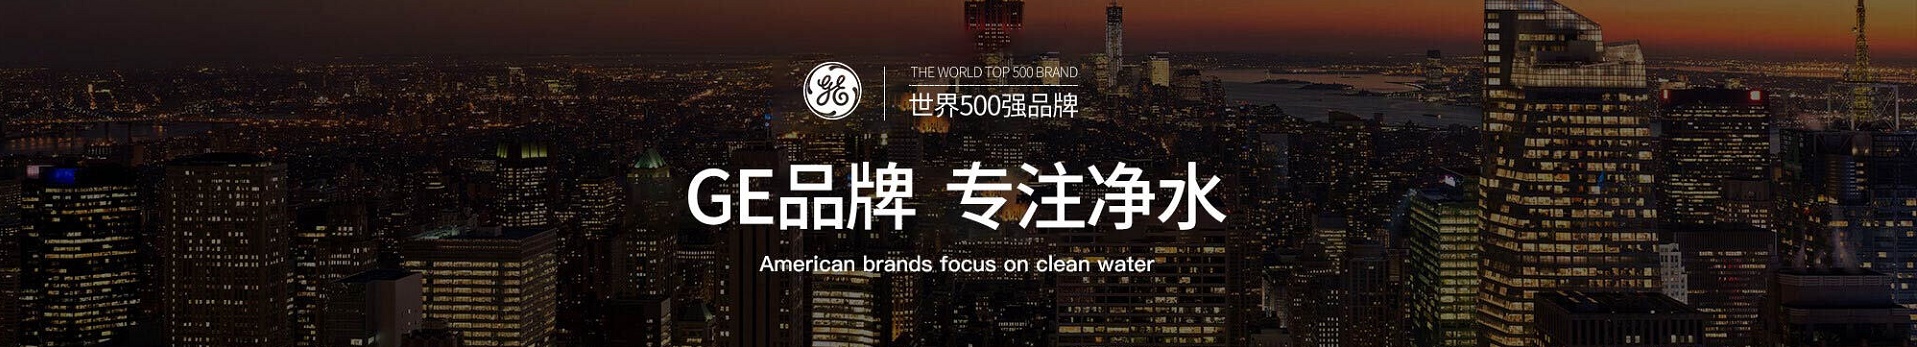 中国最专业的净水器制造专家|第一品牌直饮水机